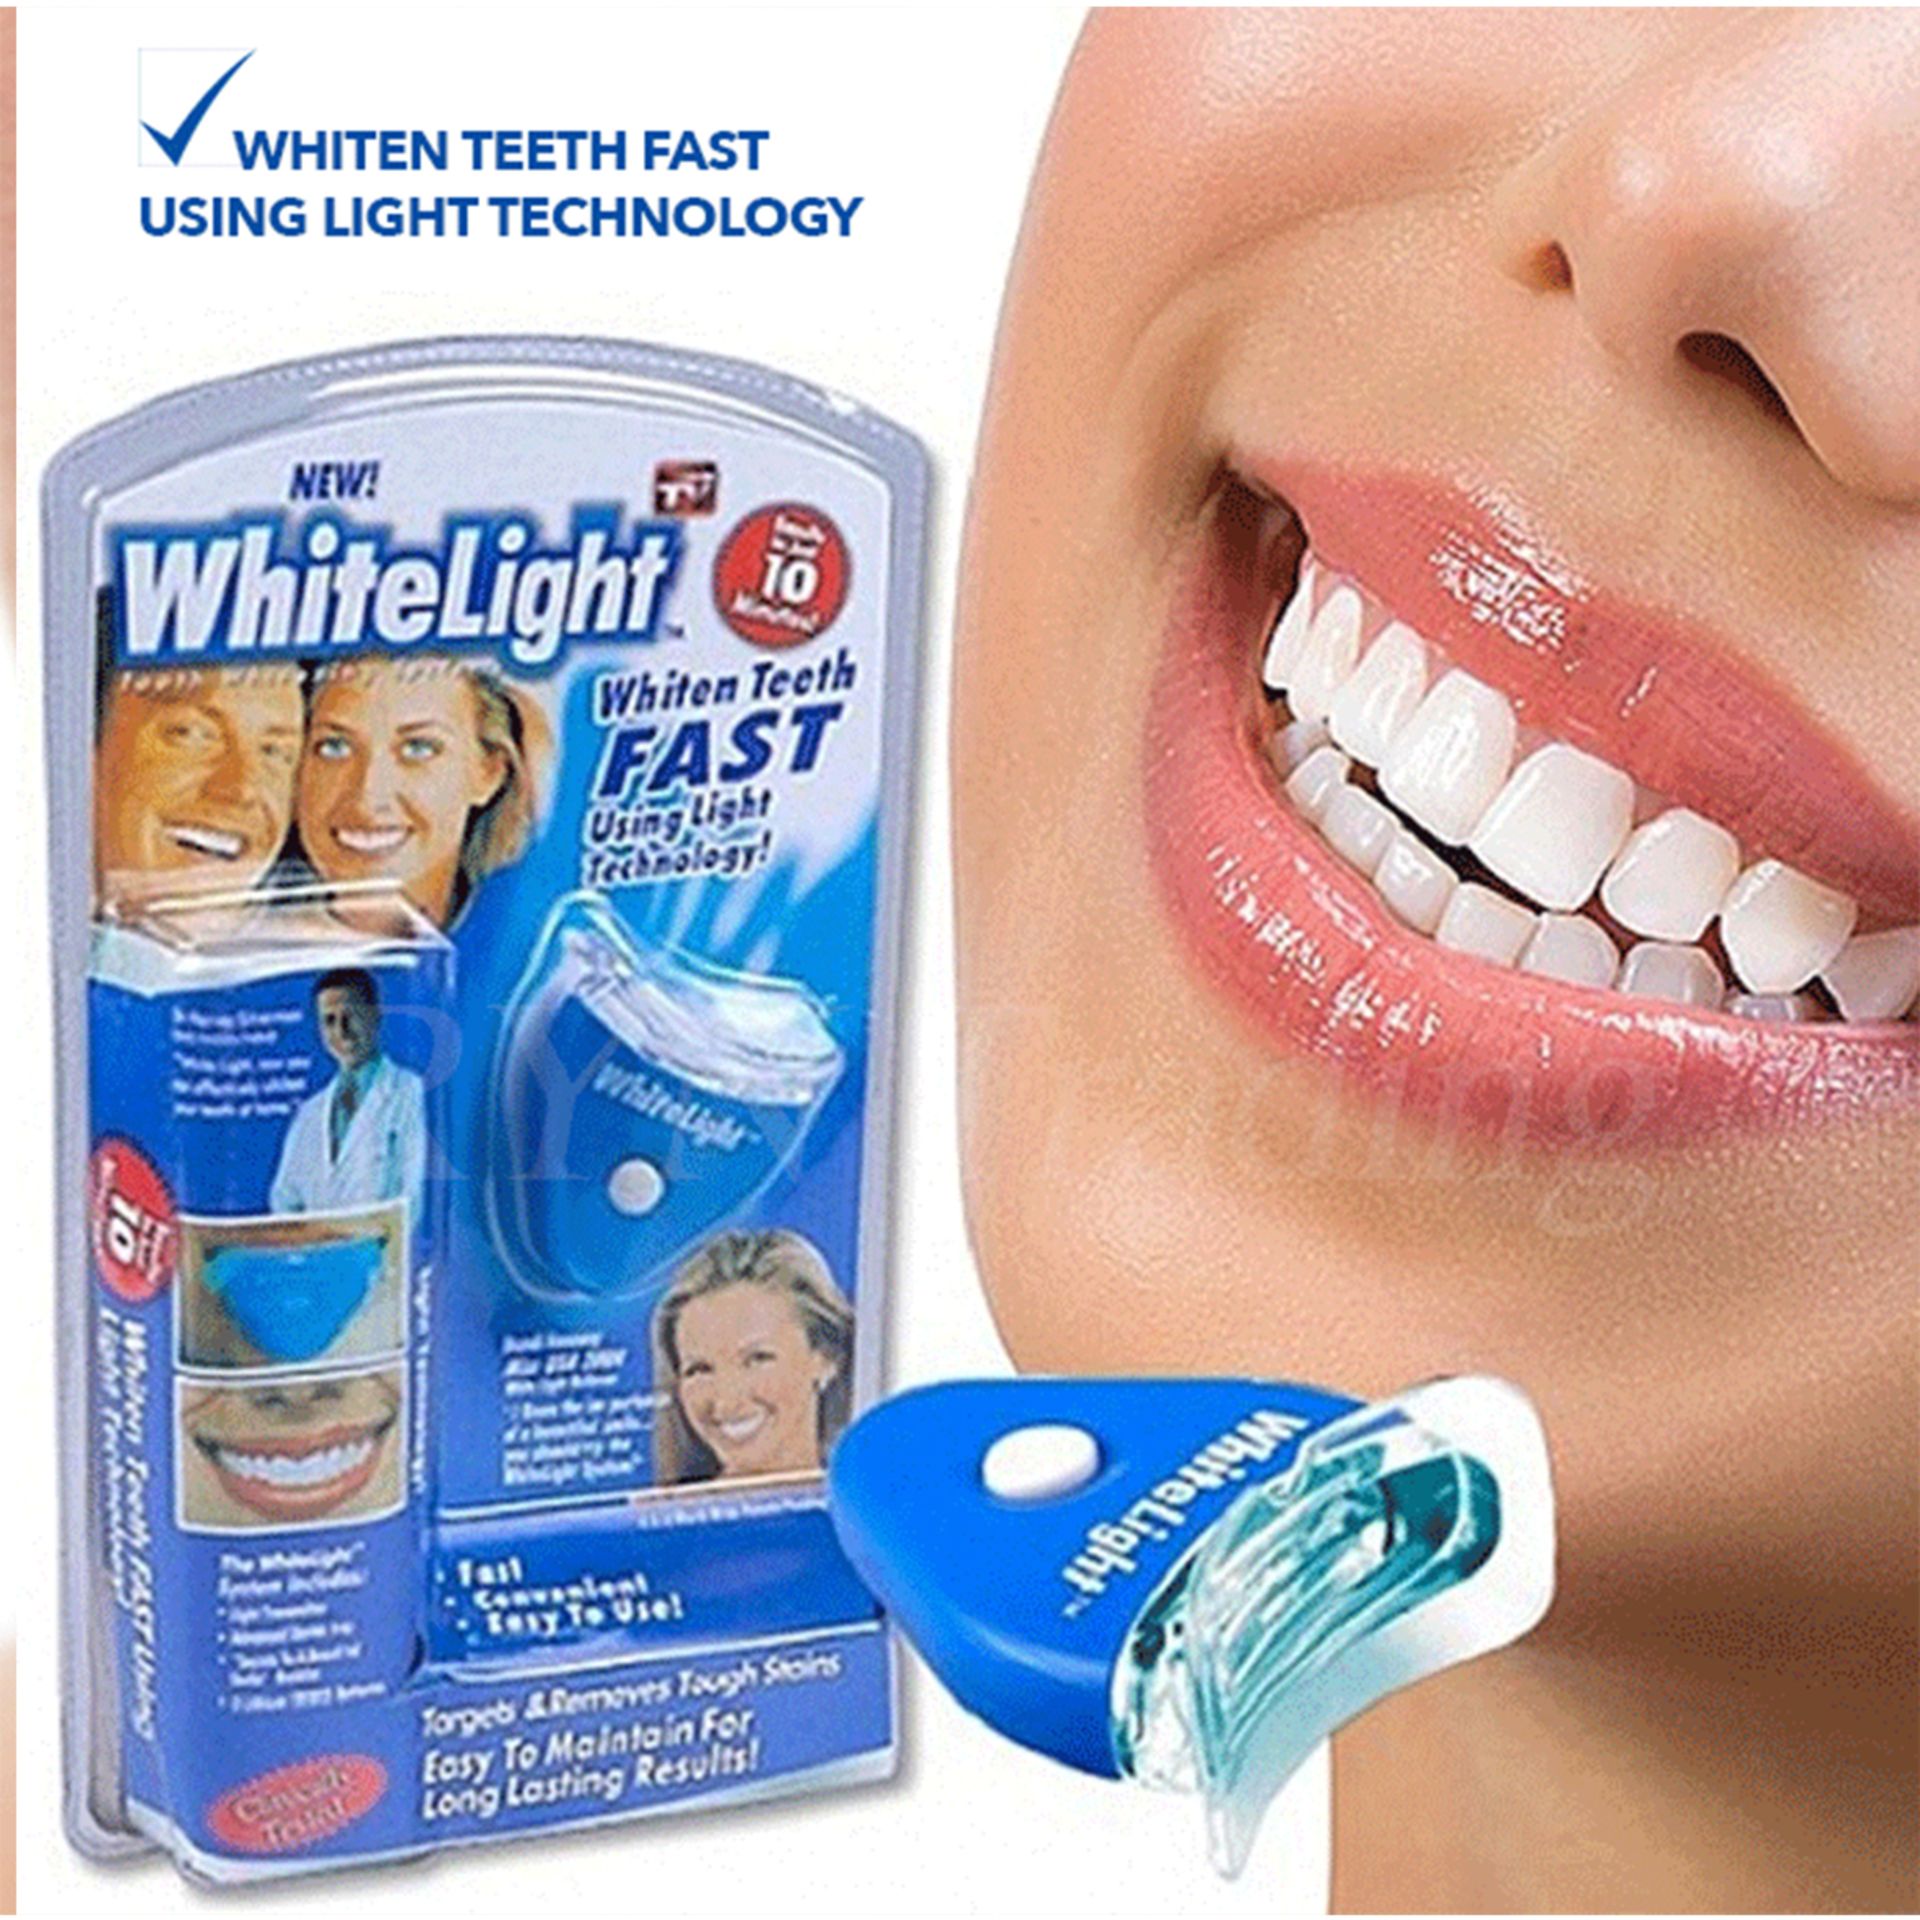 LED White Light Teeth Whitening System Kit Tooth Cleaner Whitelight X5_NEW